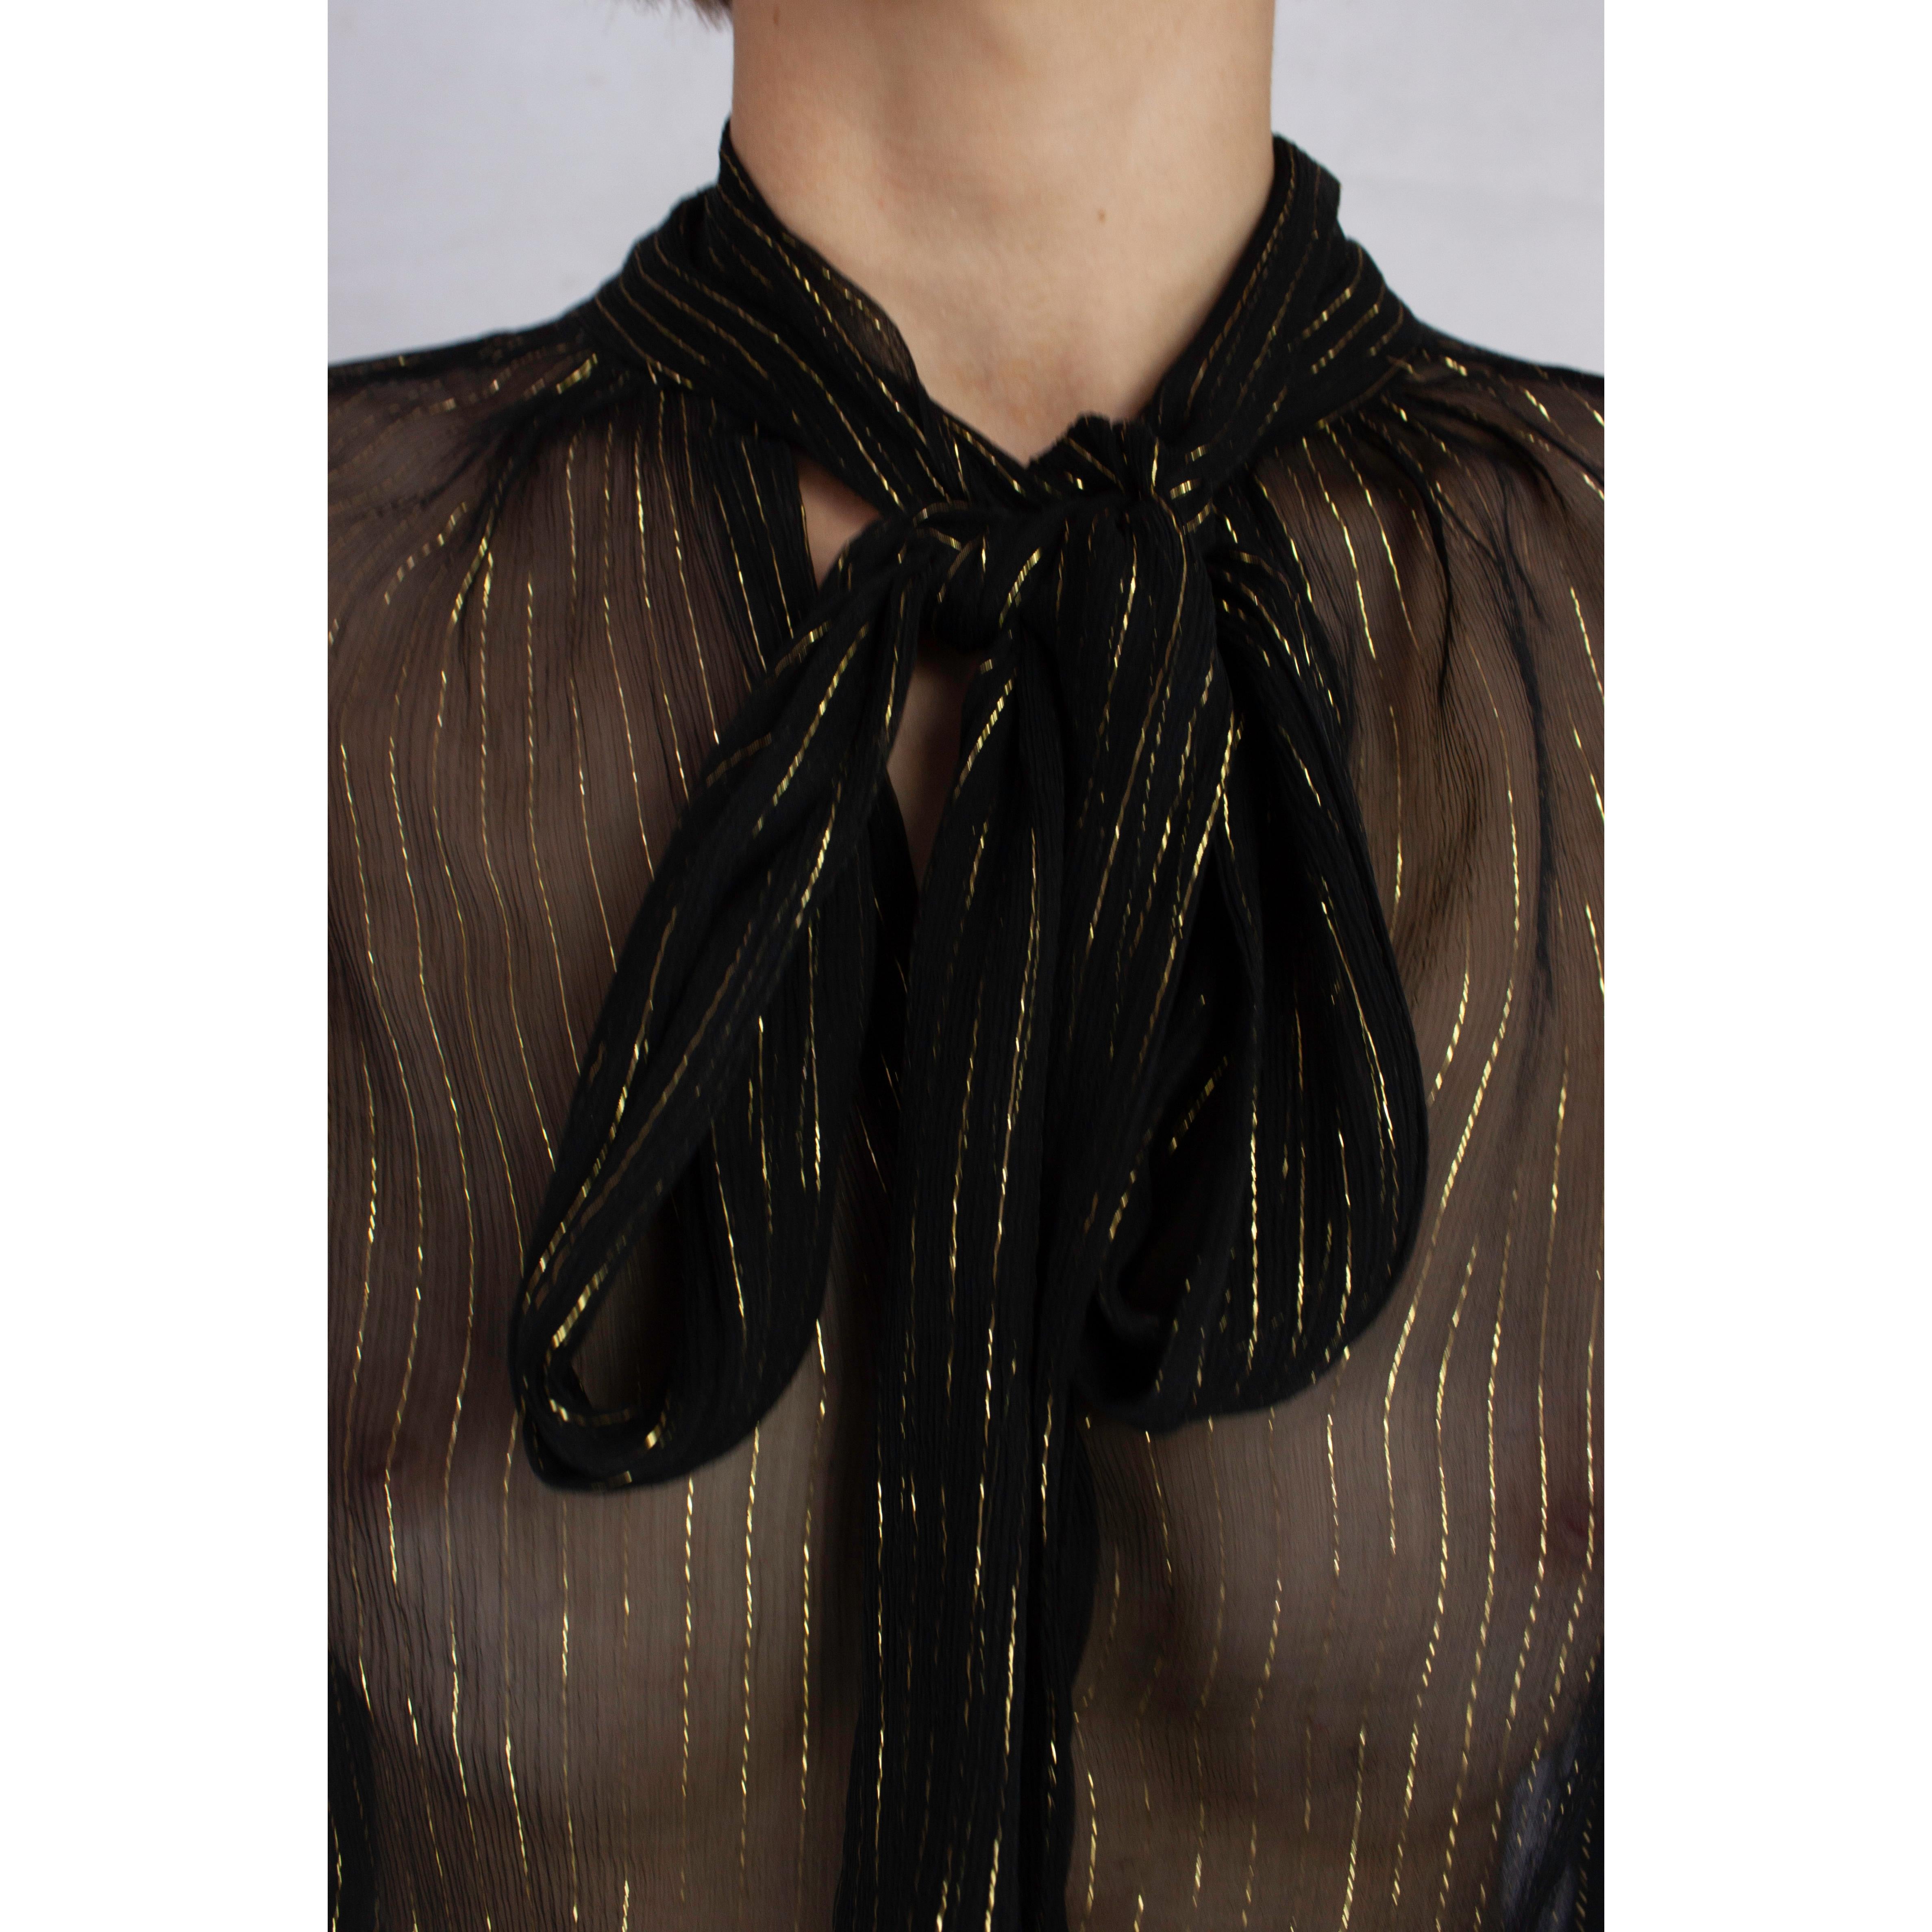 Dolce & Gabbana black and gold pinstripe silk necktie blouse, circa 1990s 4